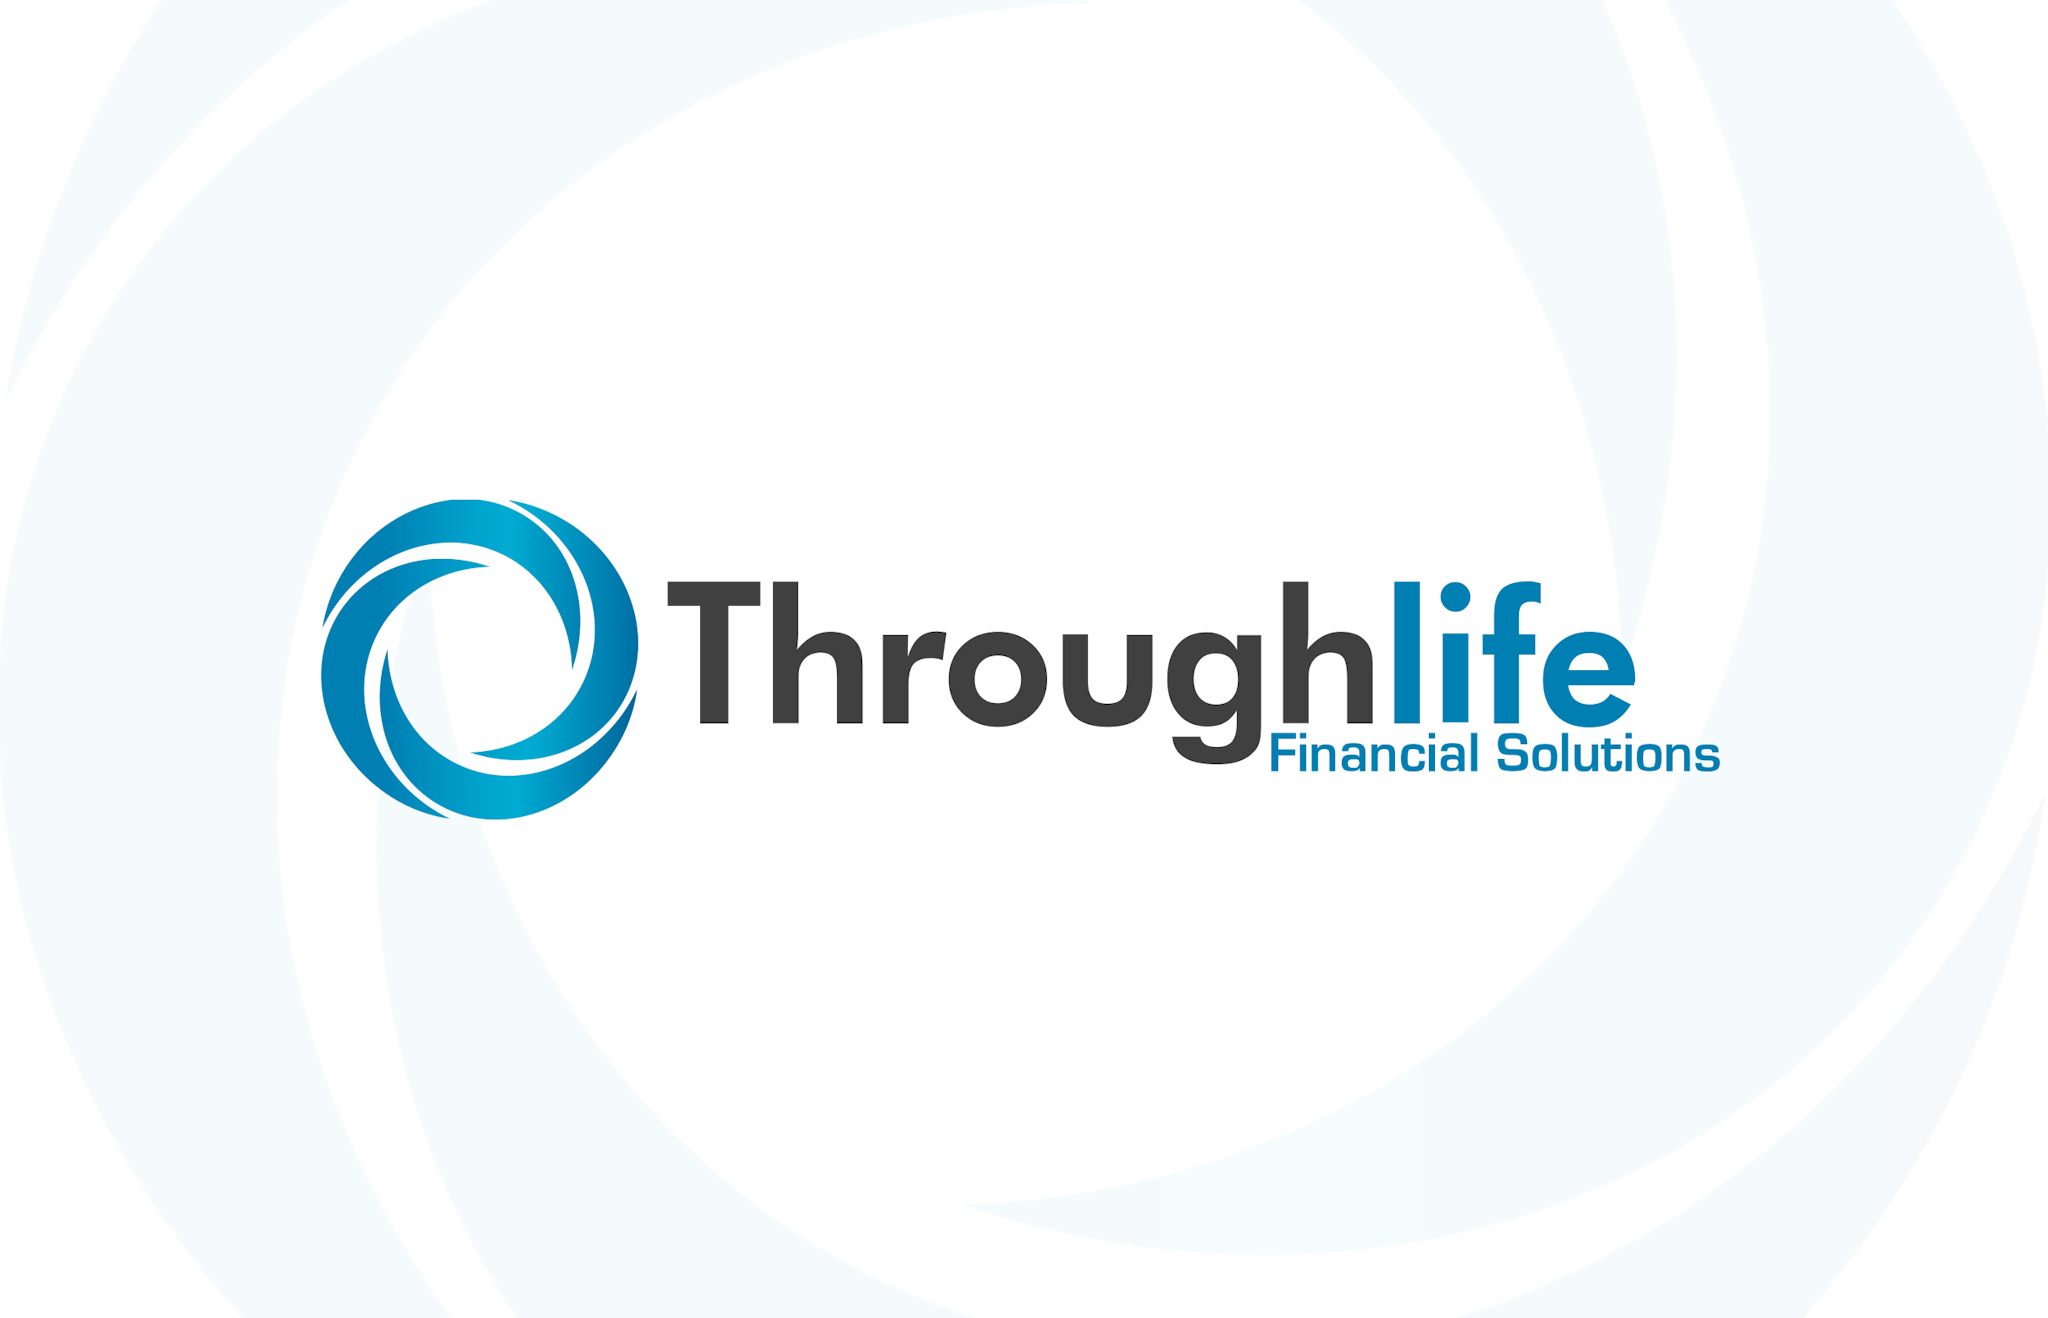 Throughlife Financial